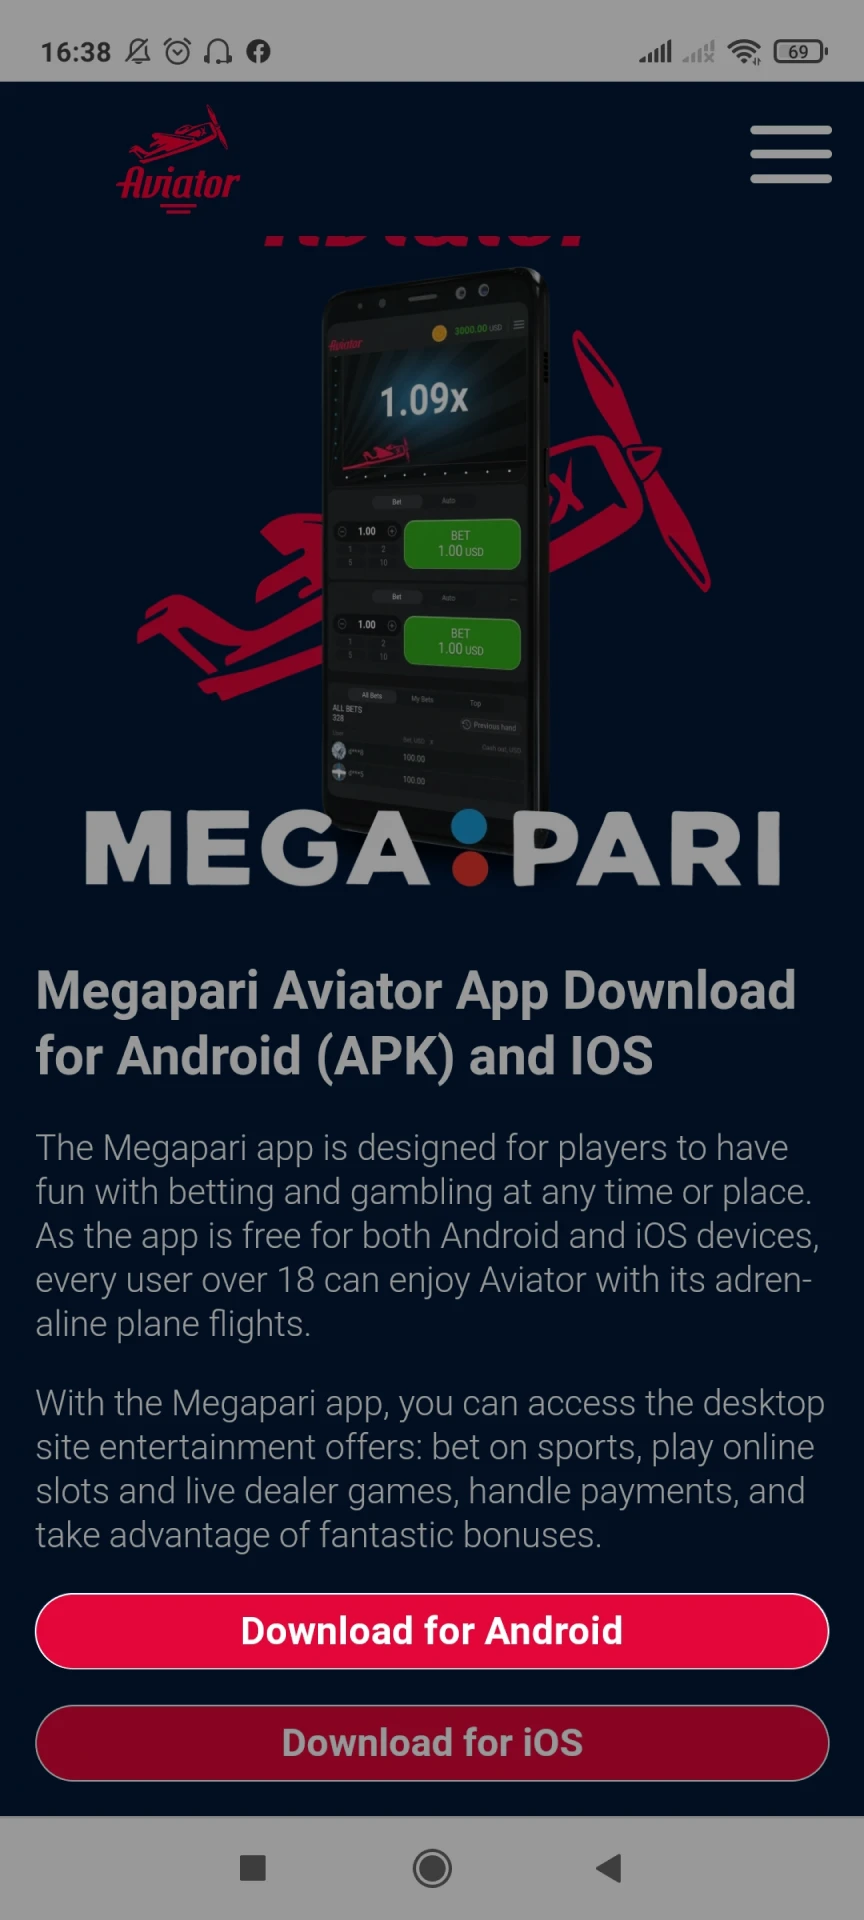 Acesse a página inicial do Megapari para baixar o aplicativo para Android.